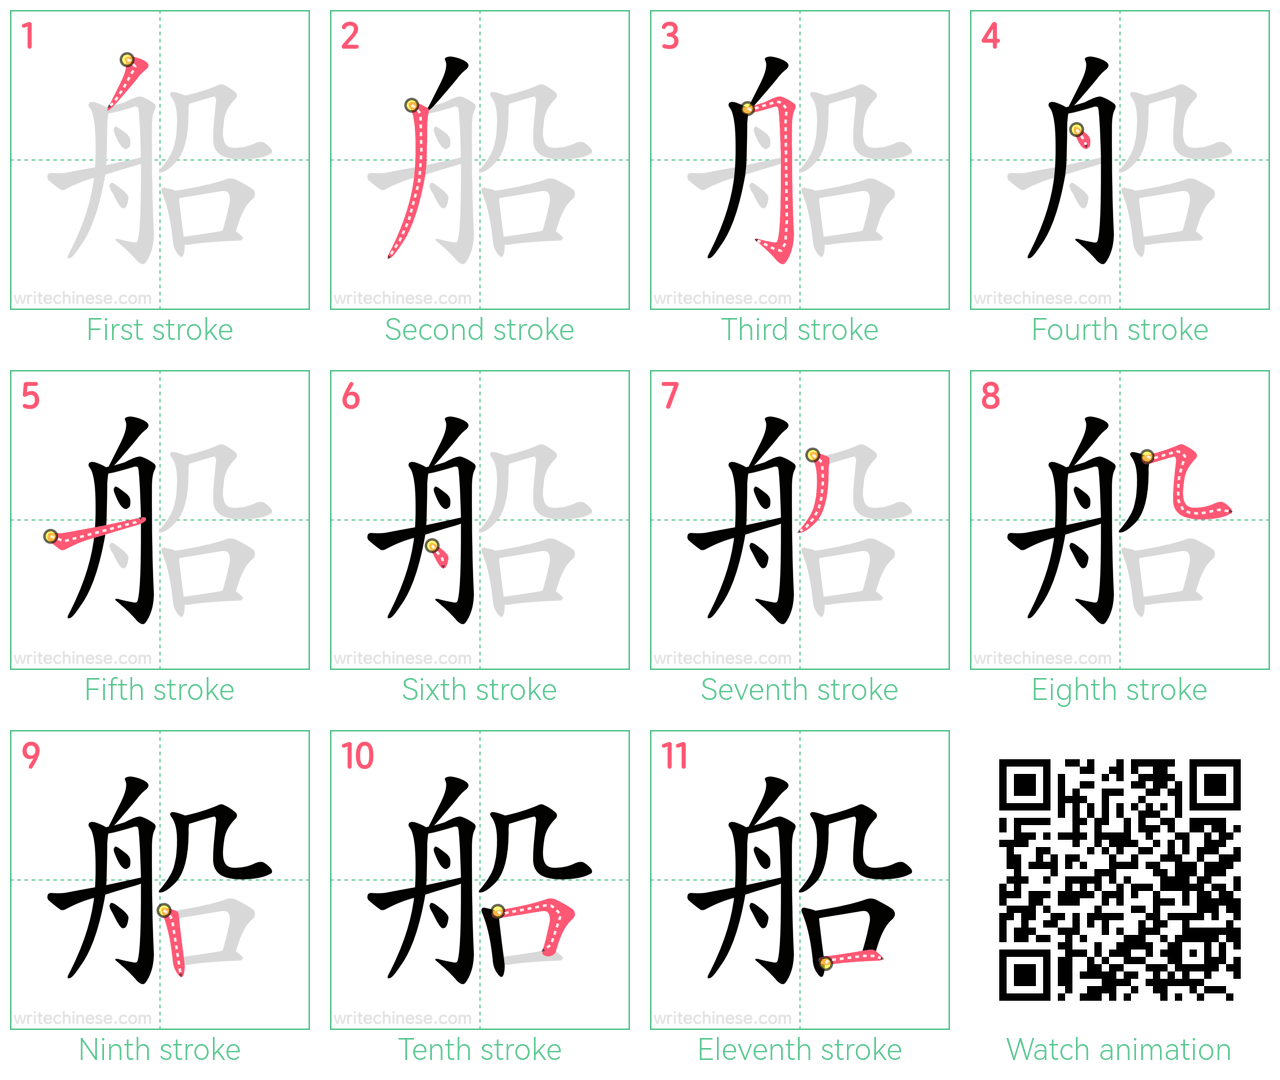 船 step-by-step stroke order diagrams